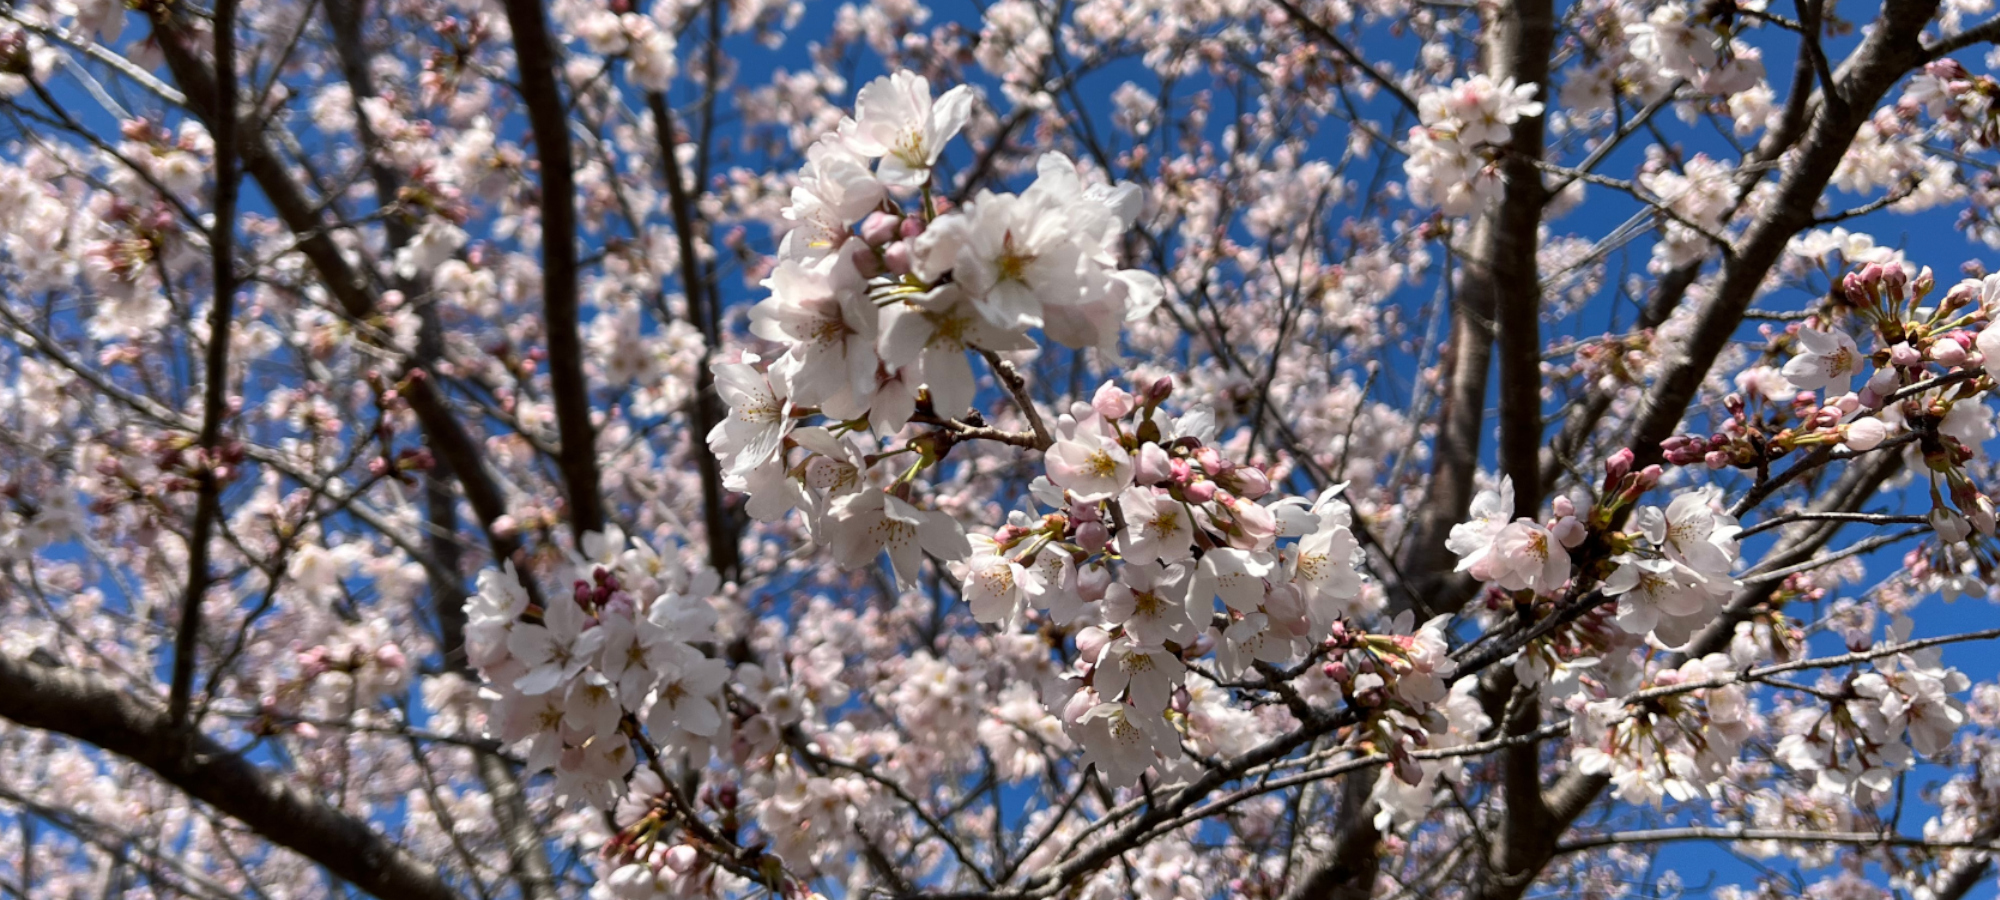 たくさんの桜のお花が咲き誇ります